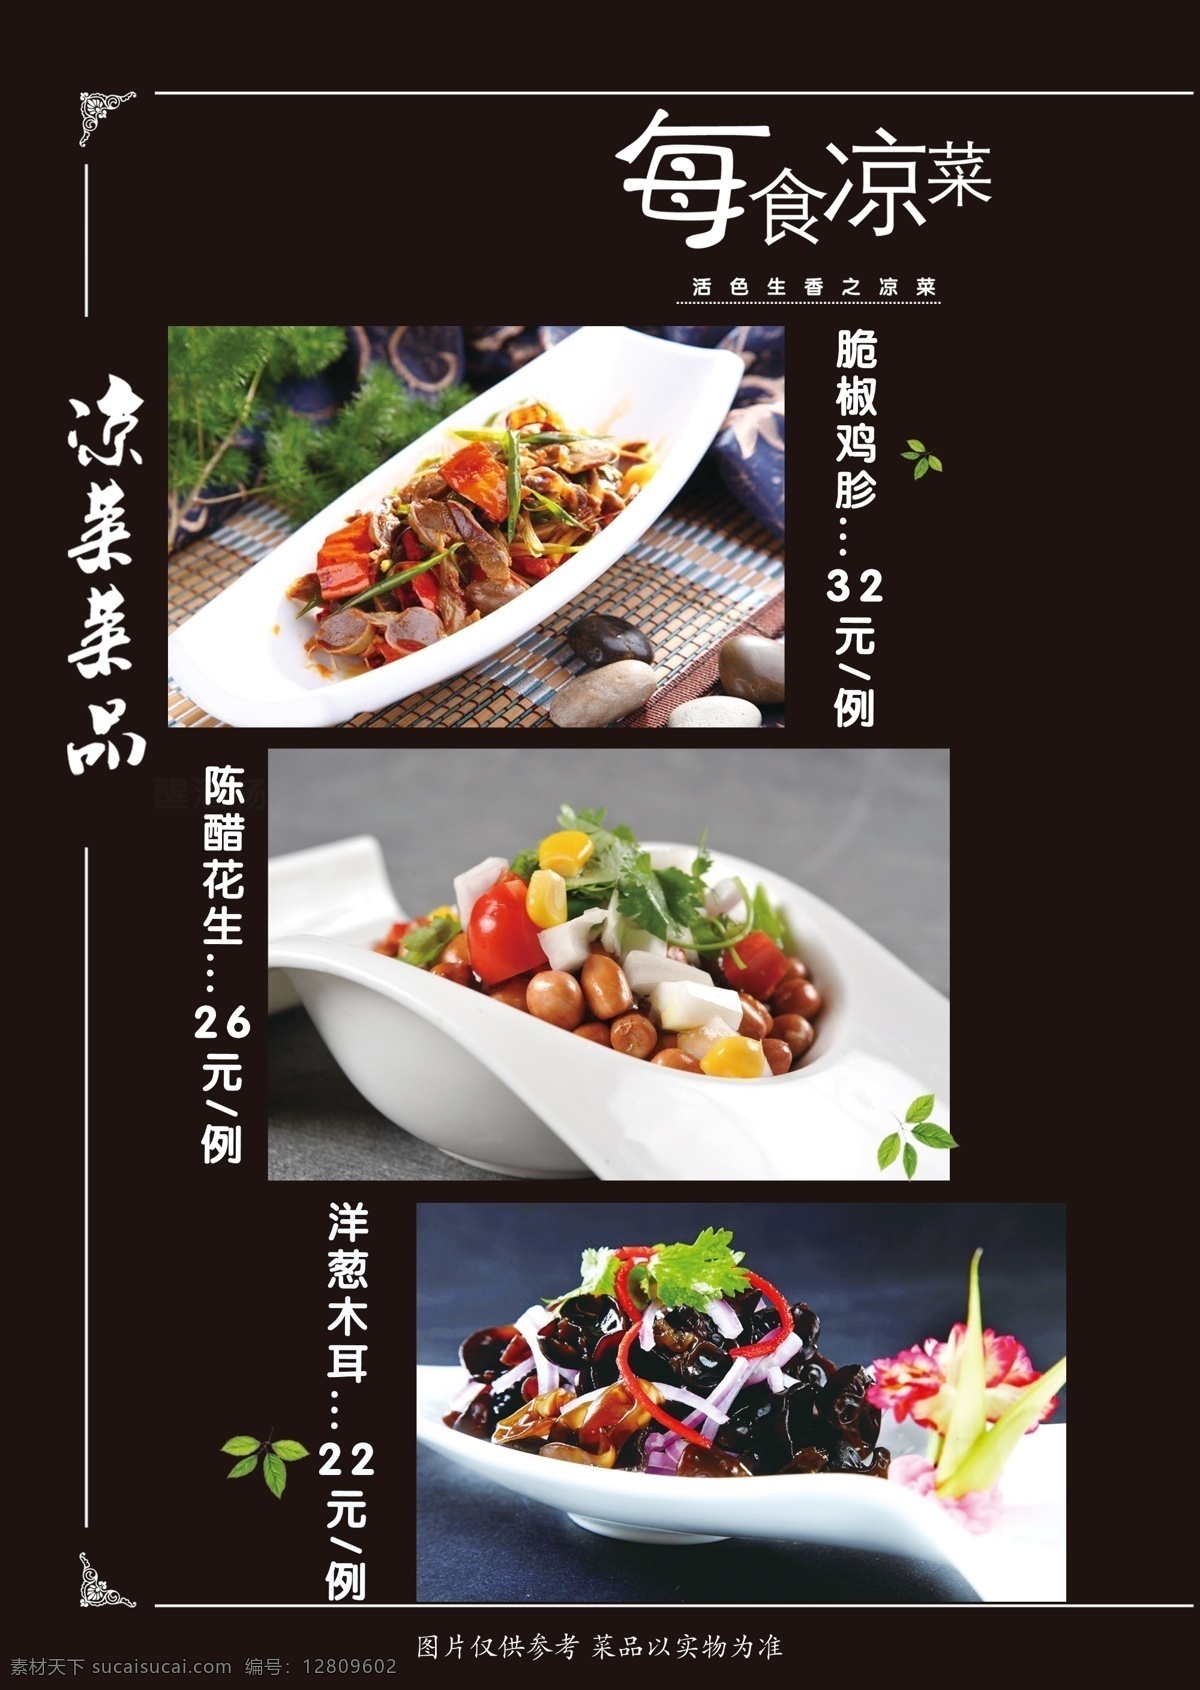 菜谱 菜单 清真 竹子 典雅 中国风 凉菜 热菜 精品菜 海鲜类 主食类 汤类 美食 餐馆 分层